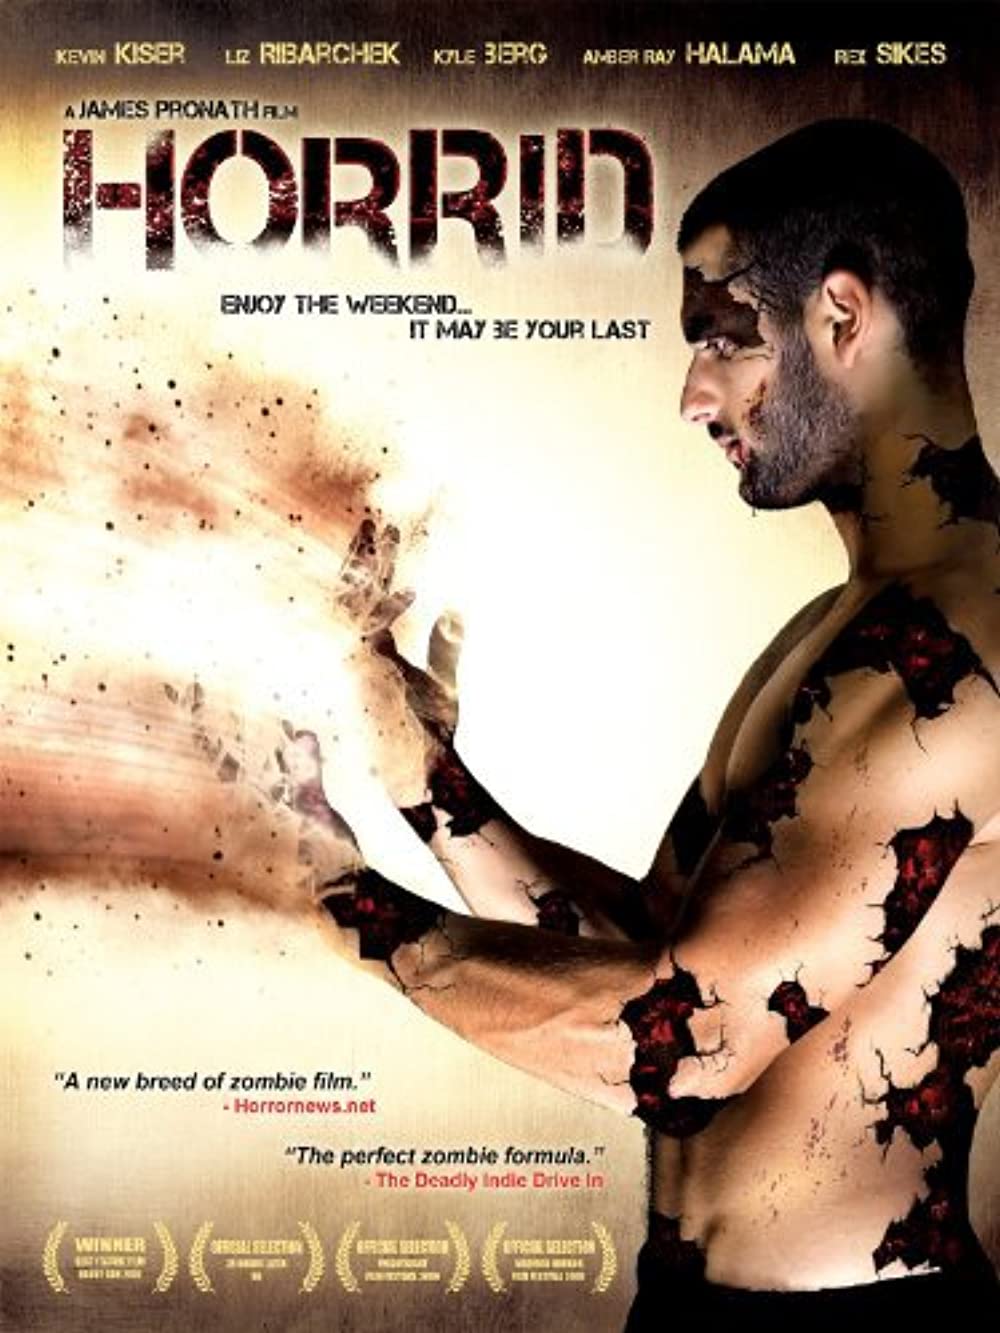 Download Horrid Movie | Horrid Movie Review